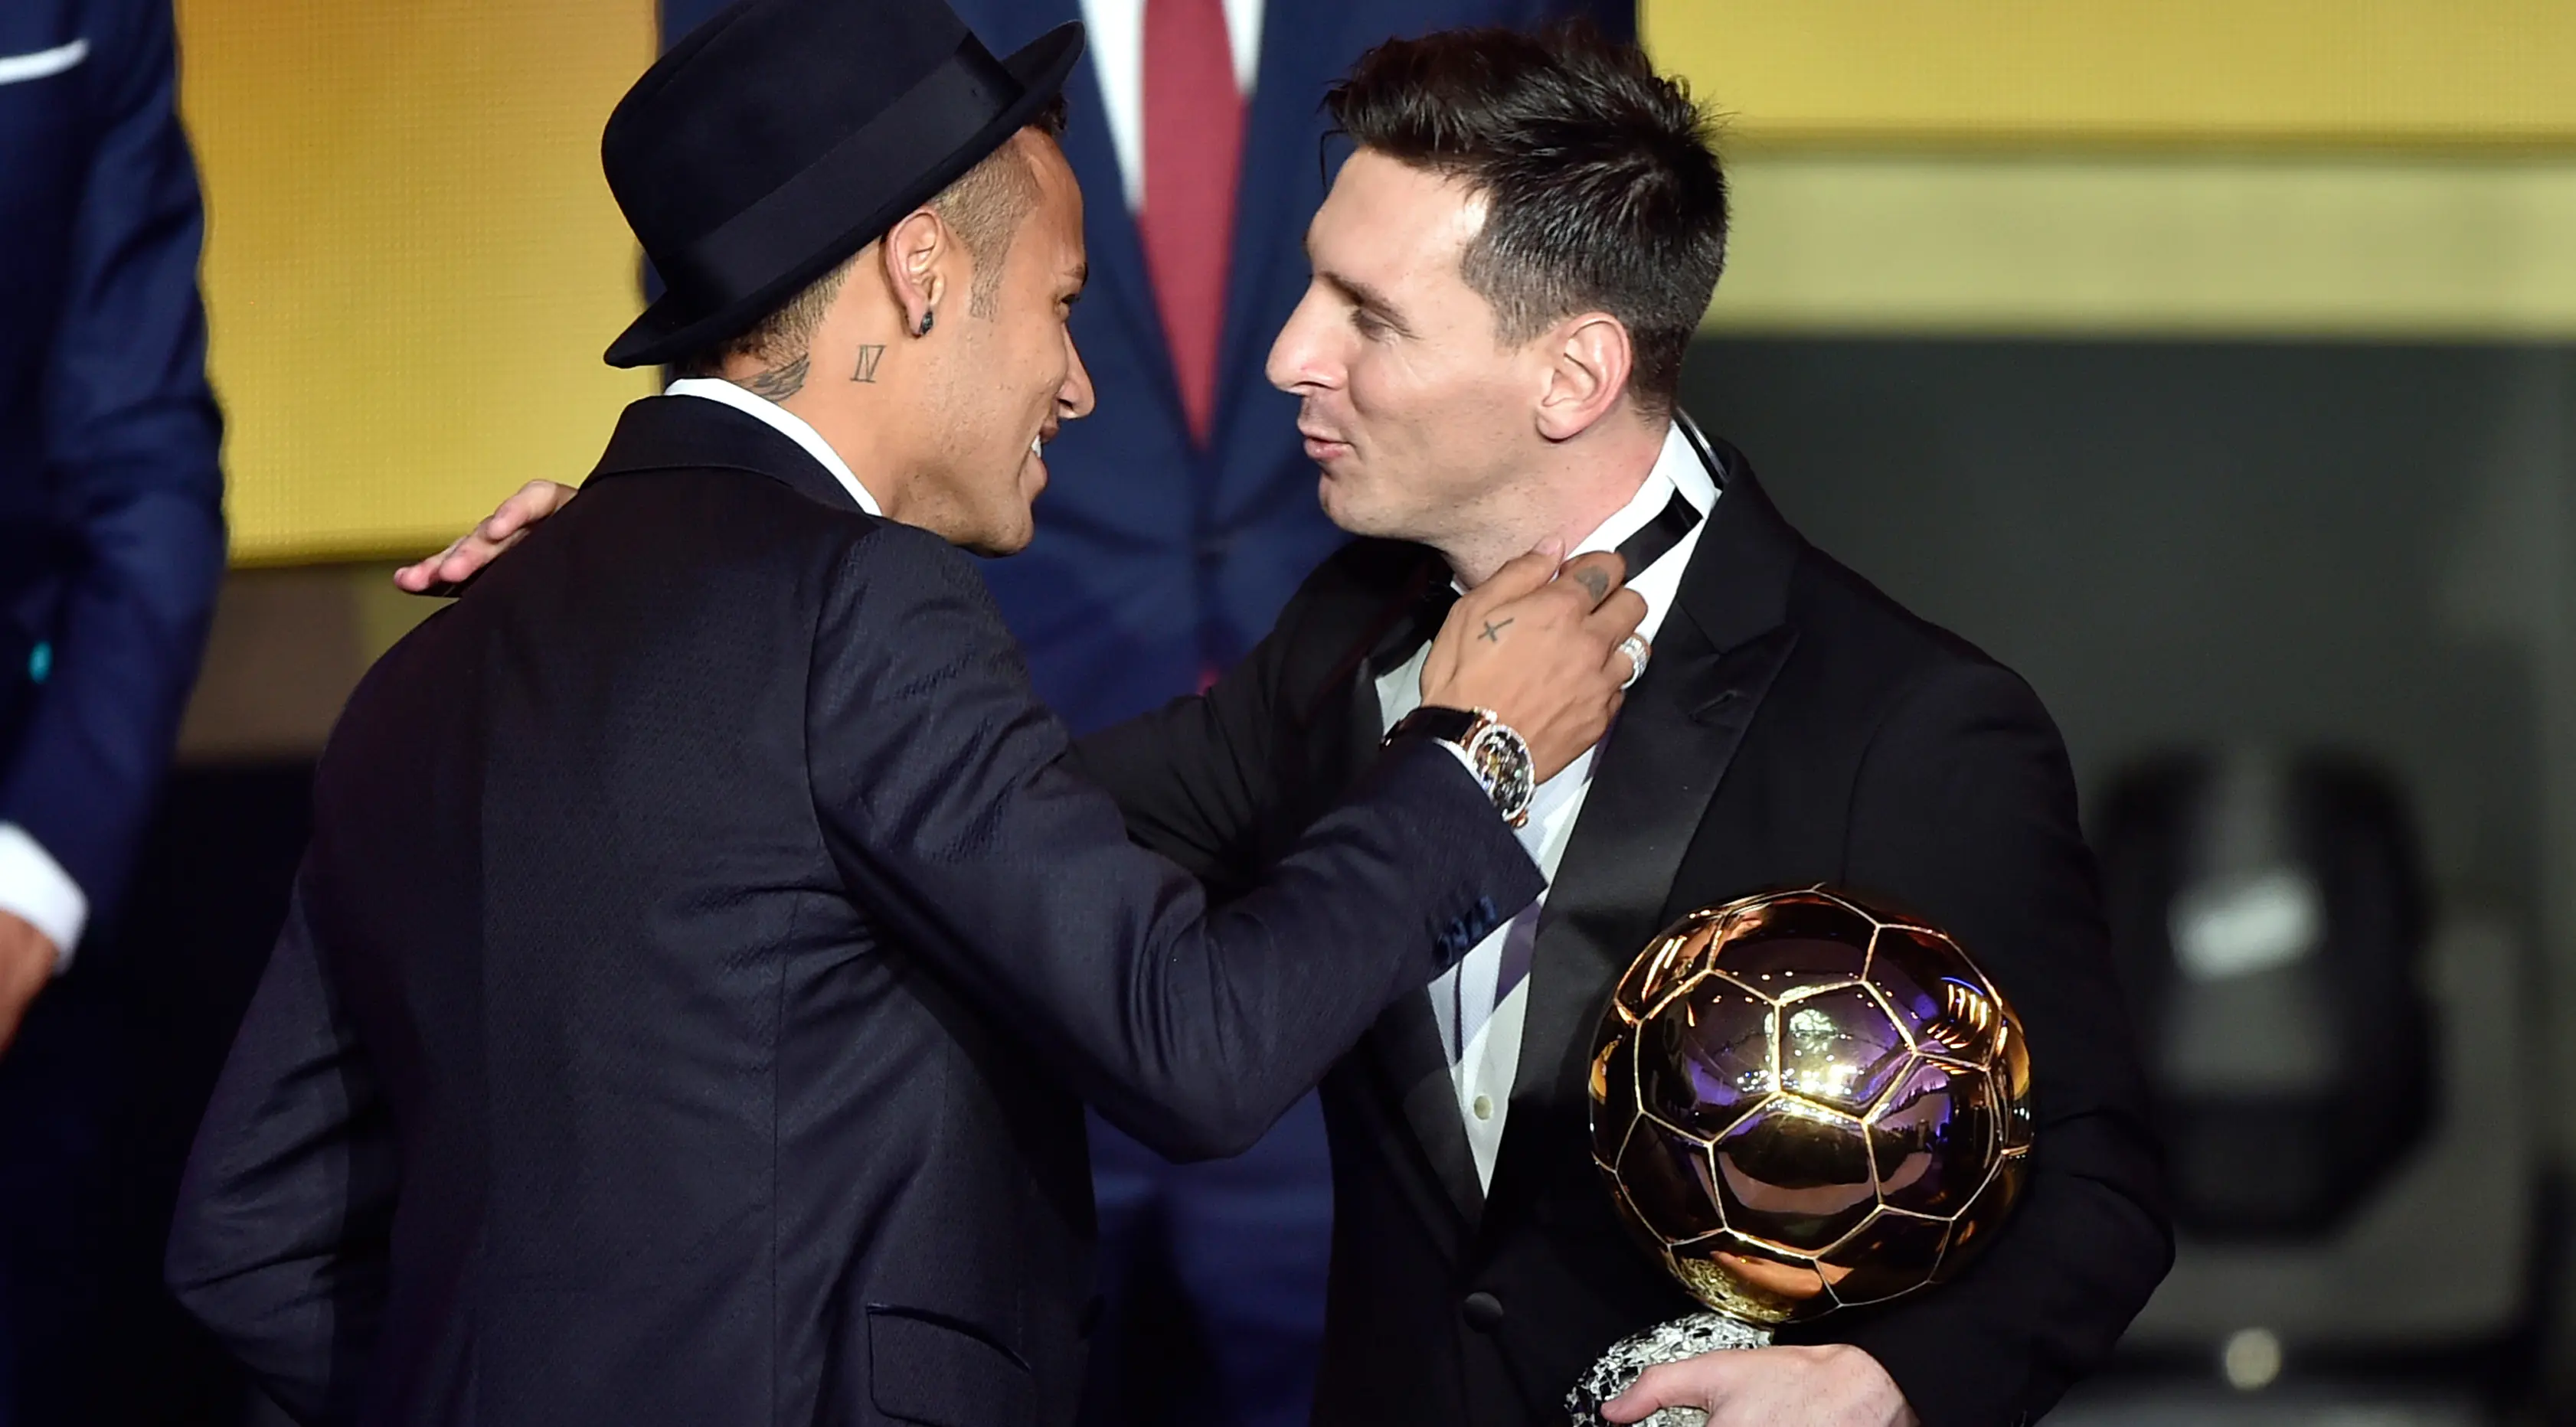 Pemain Barcelona, Lionel Messi (kanan) mendapat ucapan selamat dari pemain Barcelona lainnya, Neymar setelah memenangkan pemain terbaik dunia FIFA Ballon d'Or 2015 di Kongresshaus, Zurich, Senin ( 11/1). (AFP PHOTO/FABRICE COFFRINI)